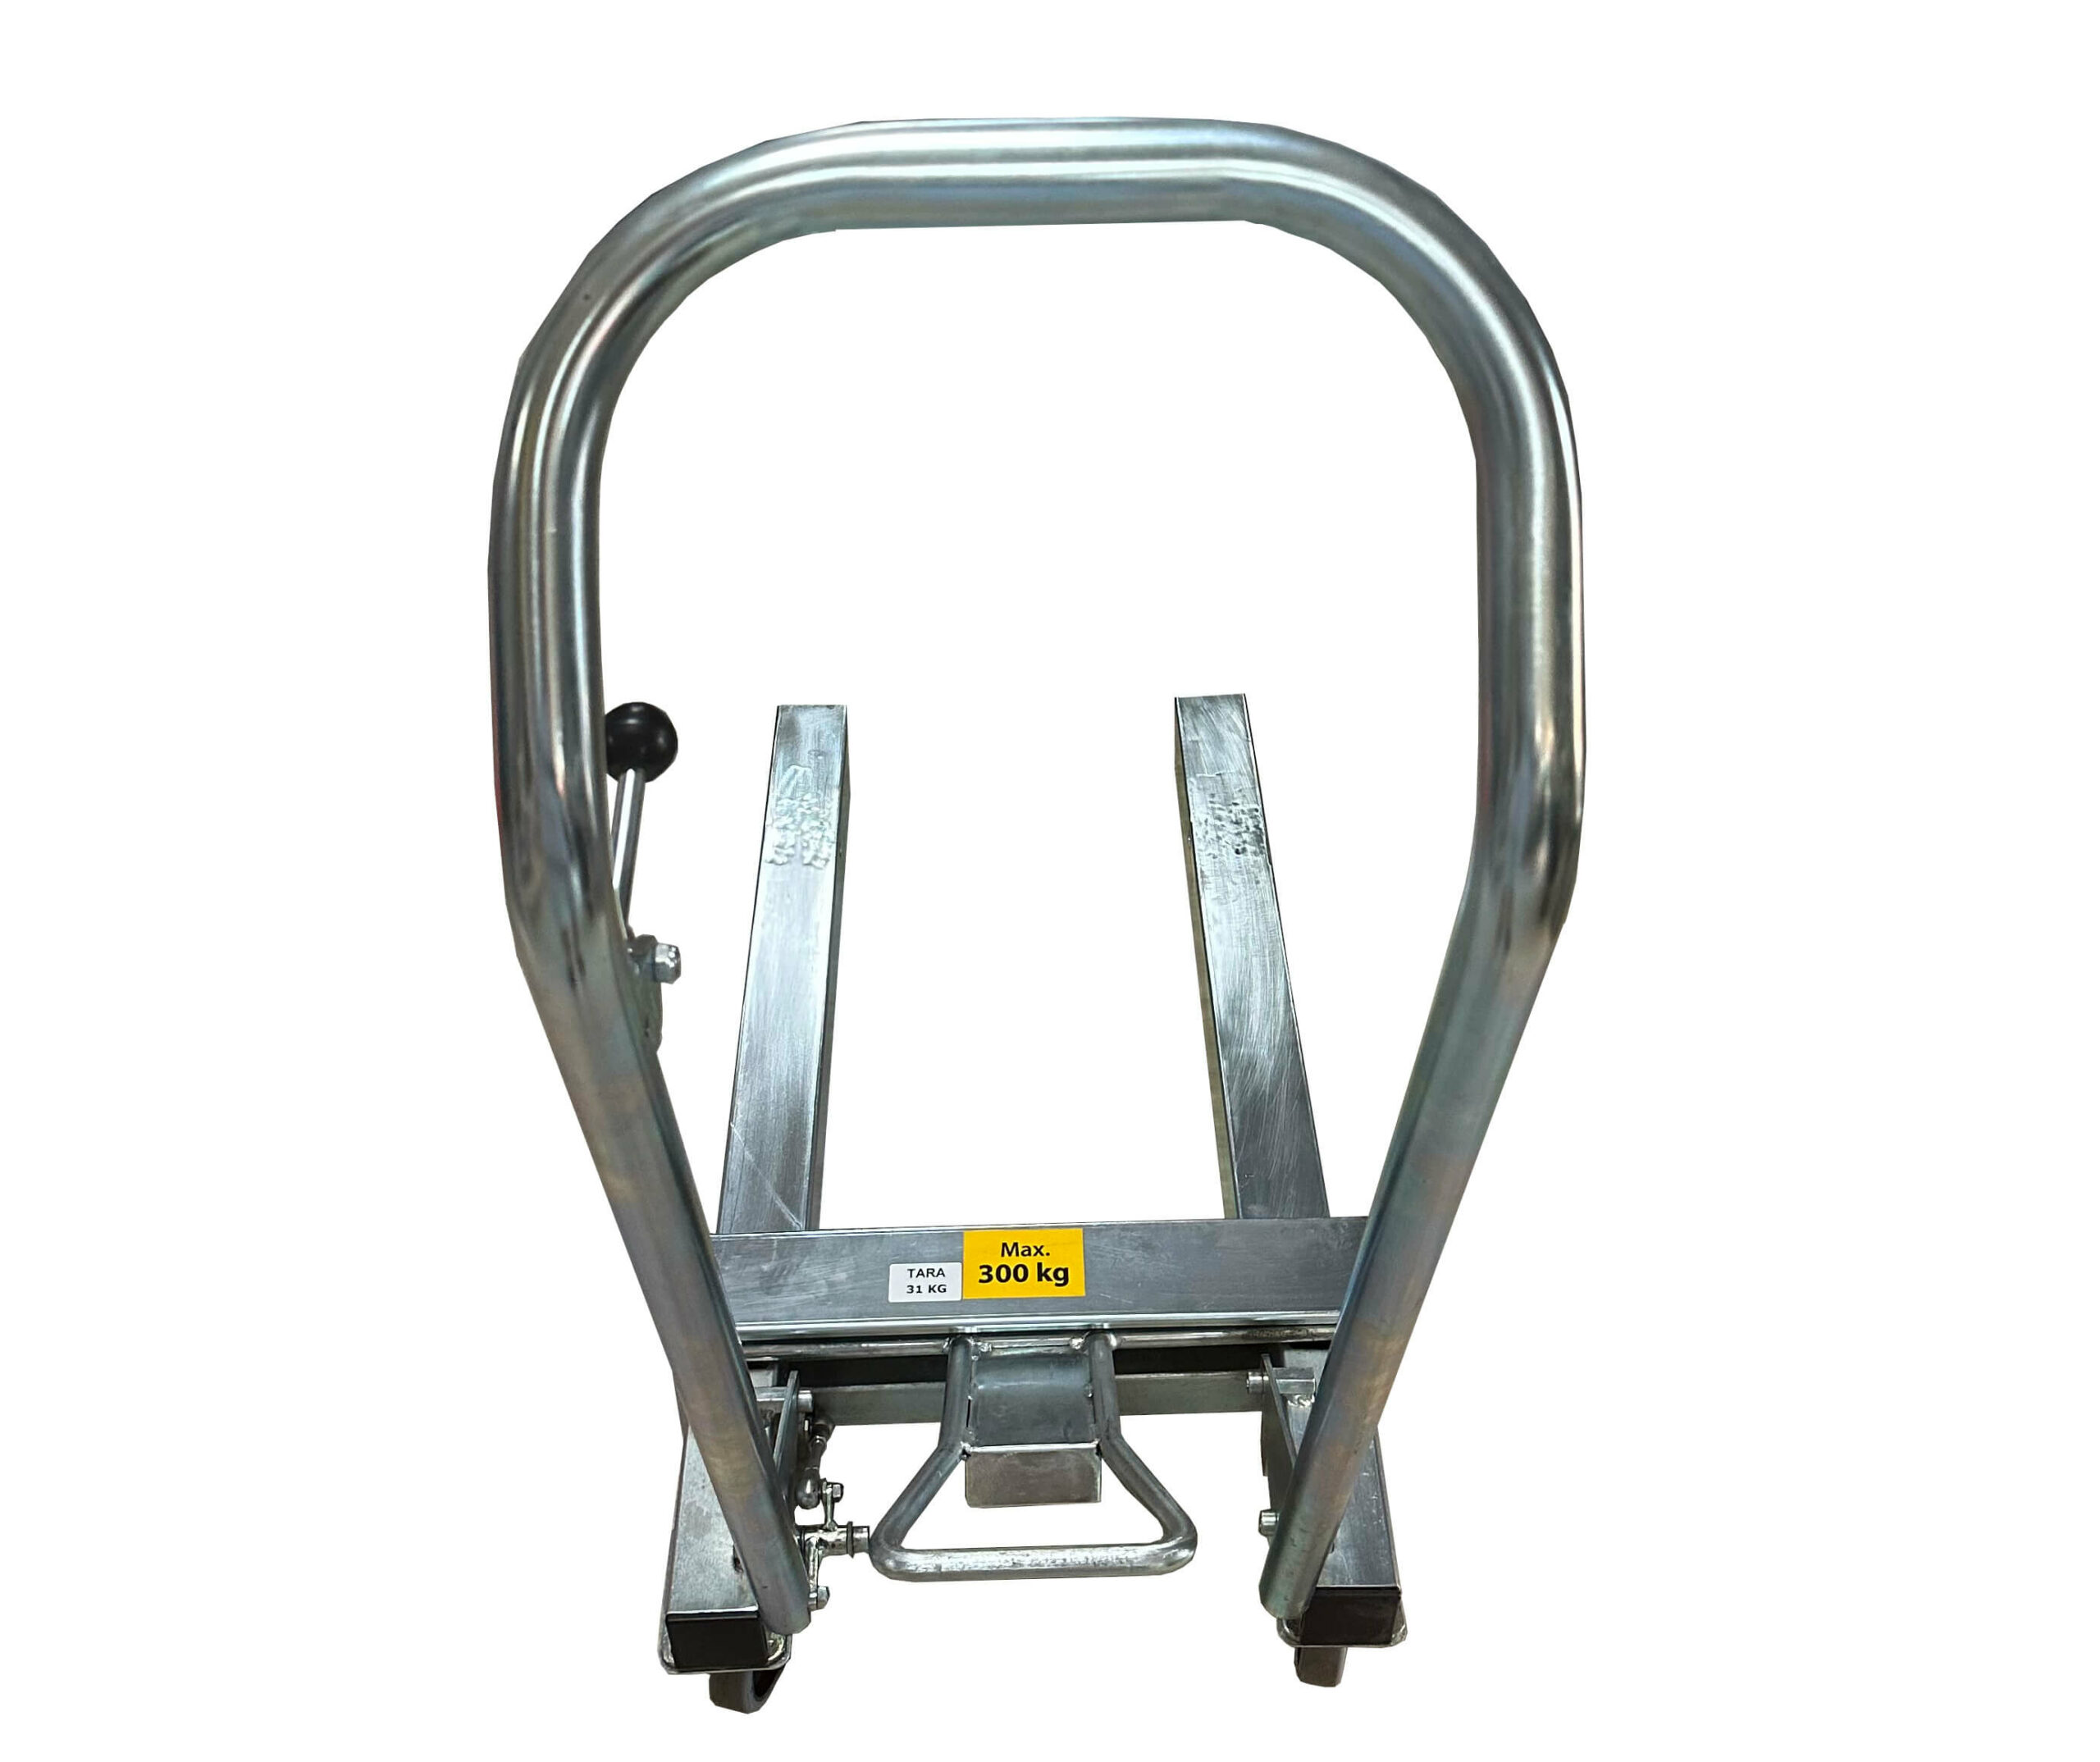 Vienu pedalo paspaudimu iki 300kg svorio paletę pakeliantis, lengvas cinkuoto plieno palečių vežimėlis Athlet 780mm ilgio šakėmis